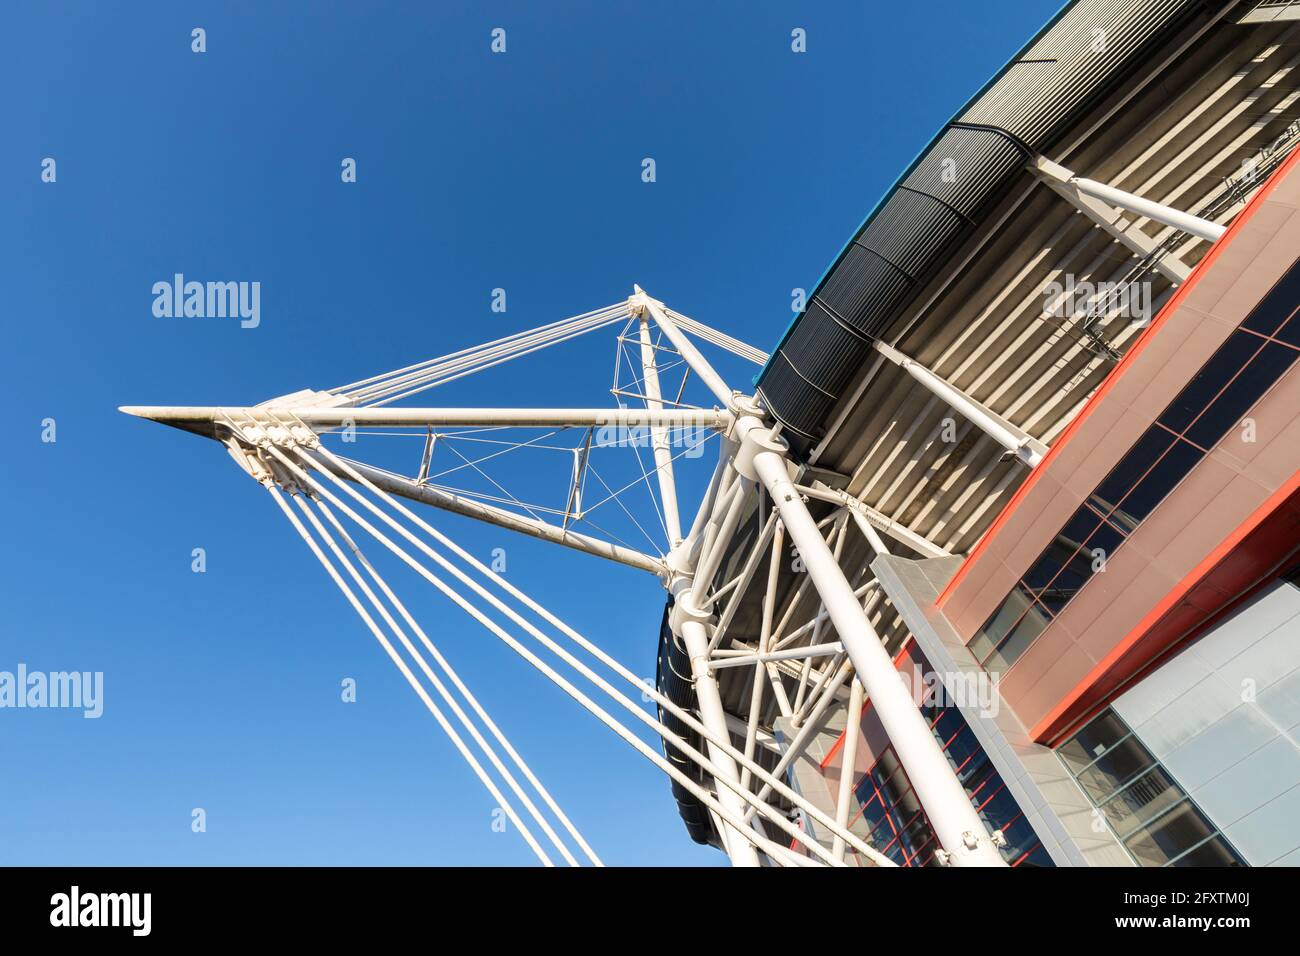 Structure de support le câble reste résistant au stress et à la contrainte, Millennium Stadium, Cardiff, pays de Galles, Royaume-Uni Banque D'Images